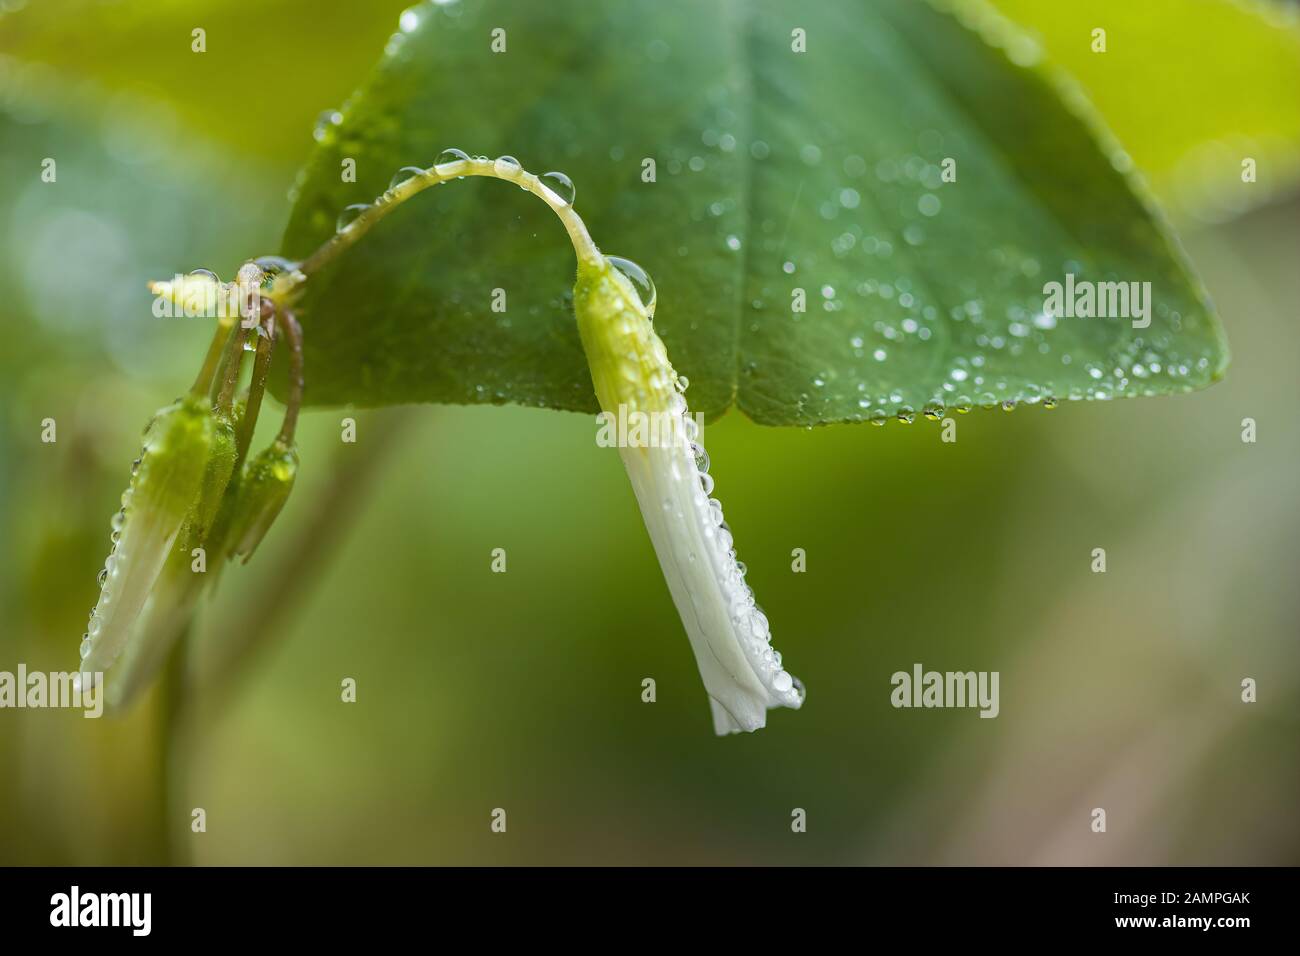 Makrobild von Shamrock-Blumen mit Regentropfen auf ihnen. Stockfoto